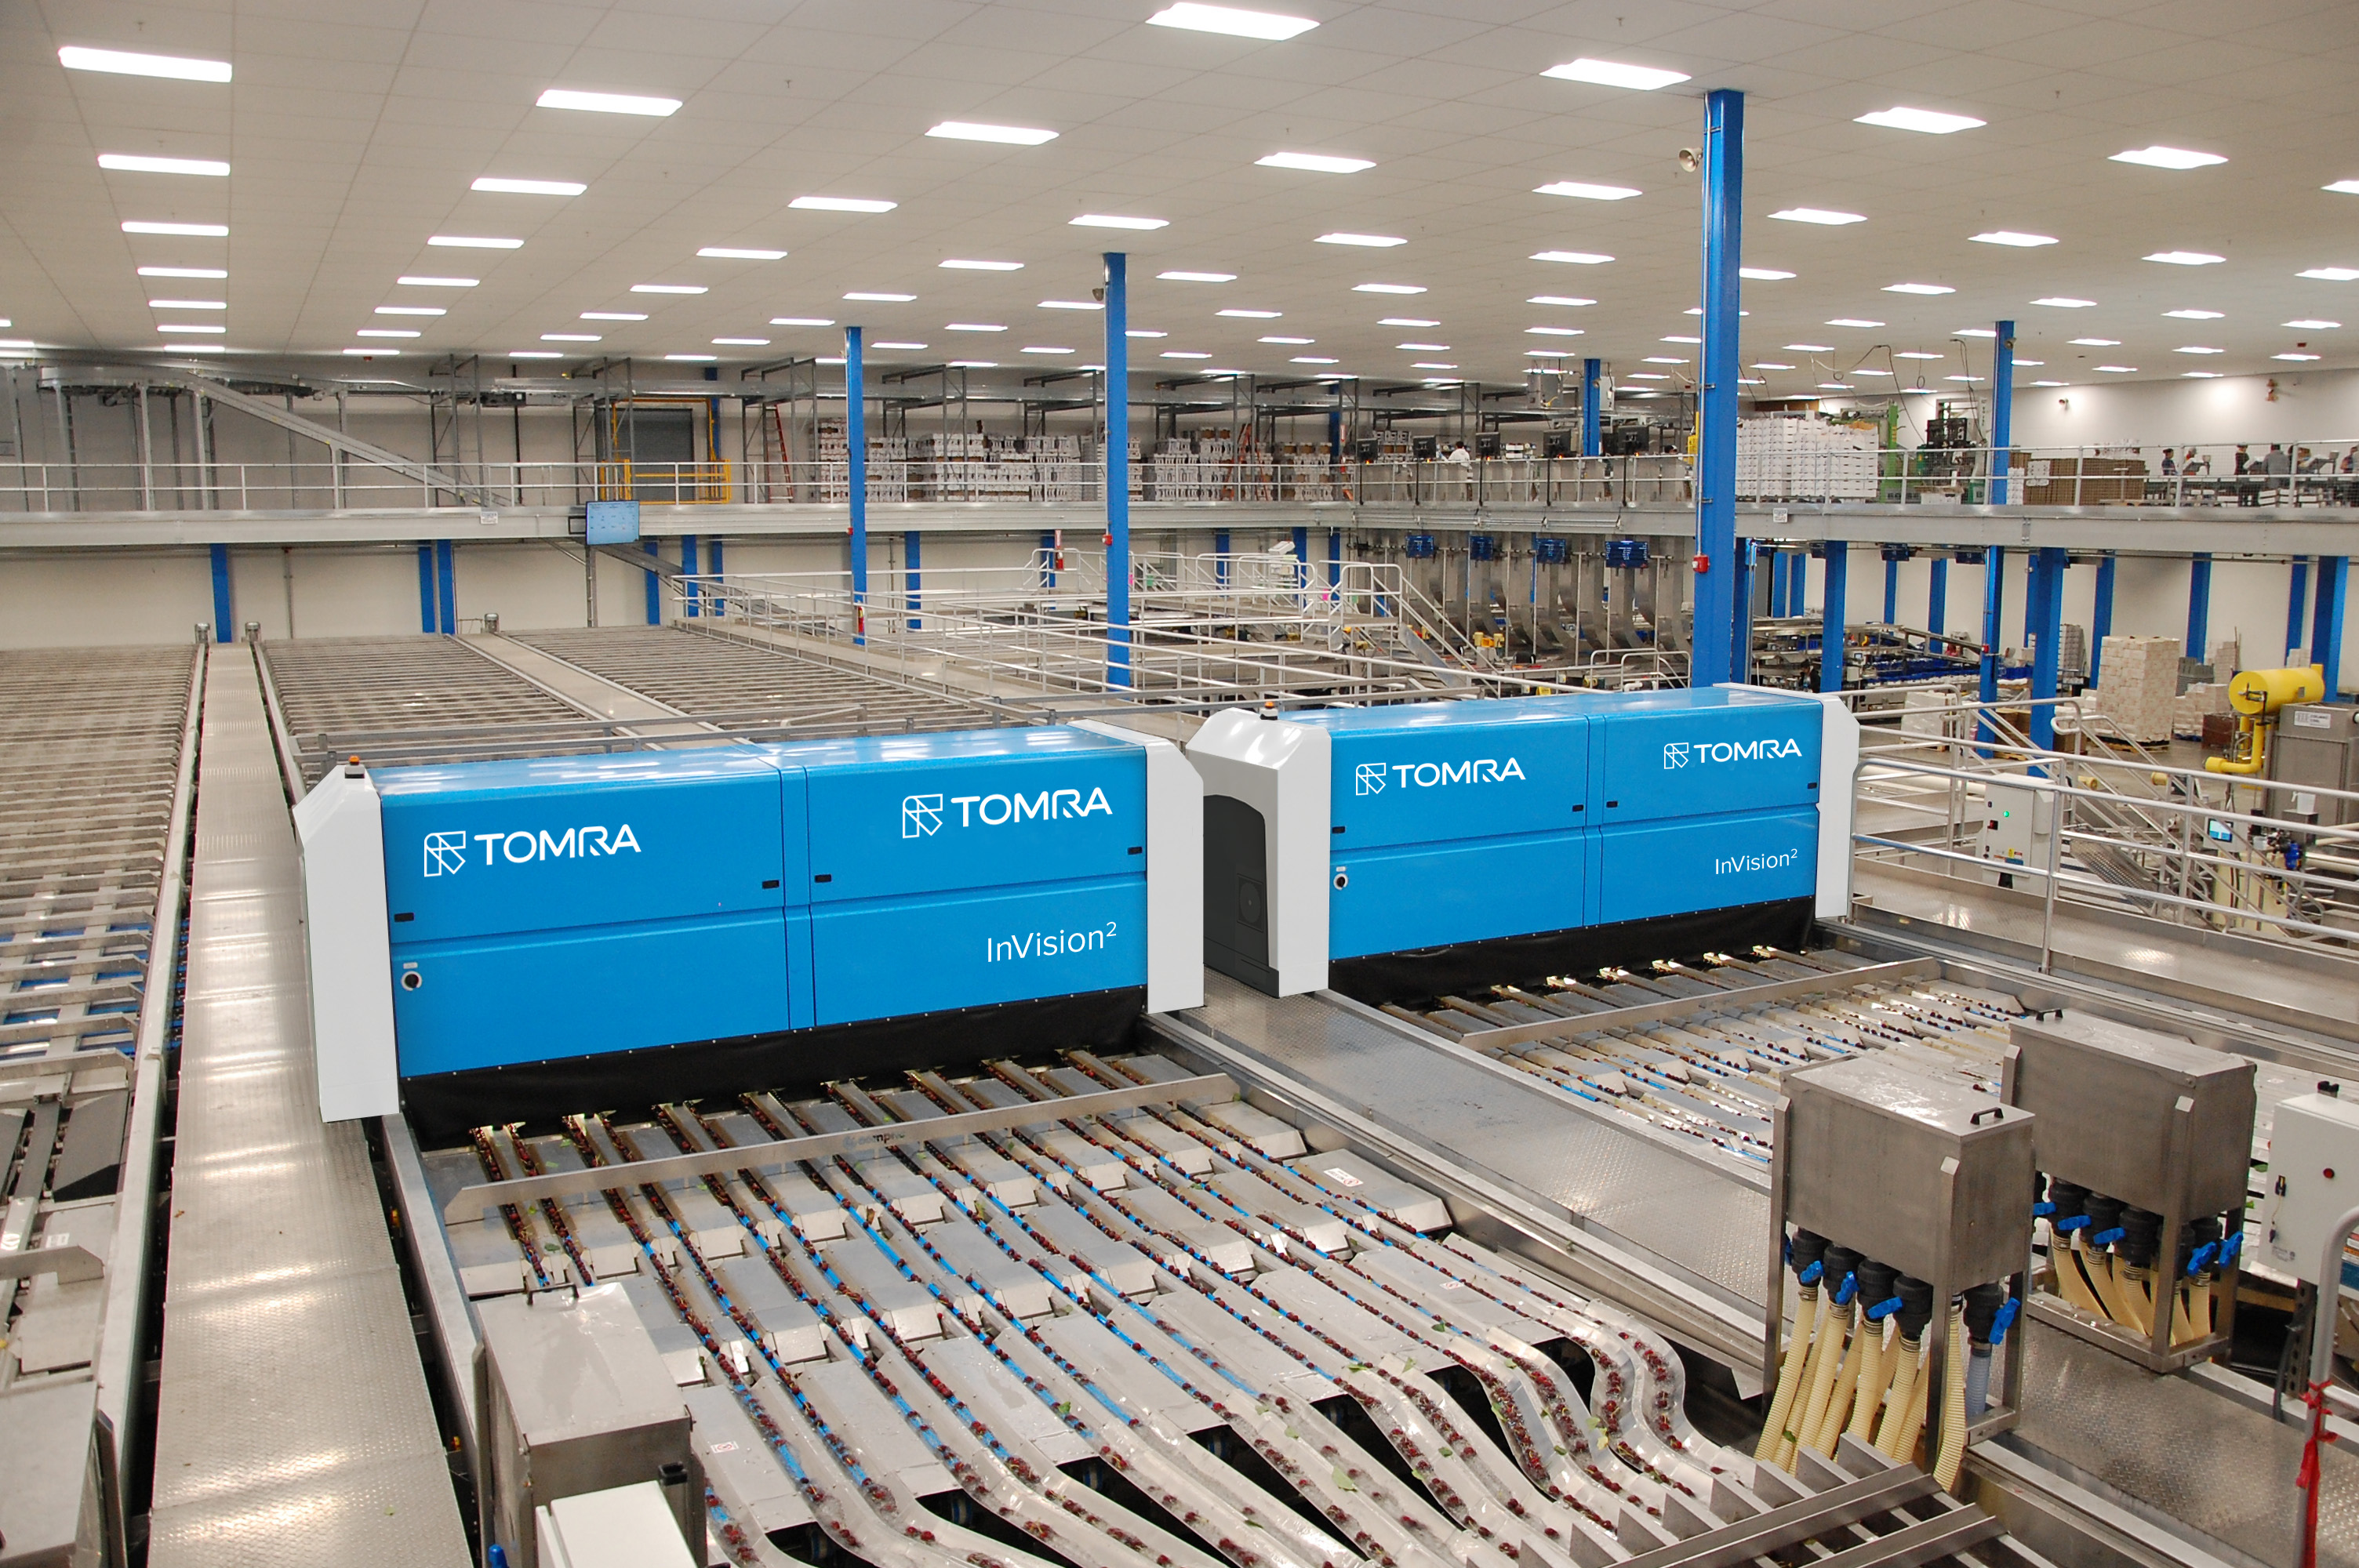 La piattaforma TOMRA LUCAi™ per InVision2 aumenta l'efficienza e la redditività dei centri di confezionamento delle ciliegie